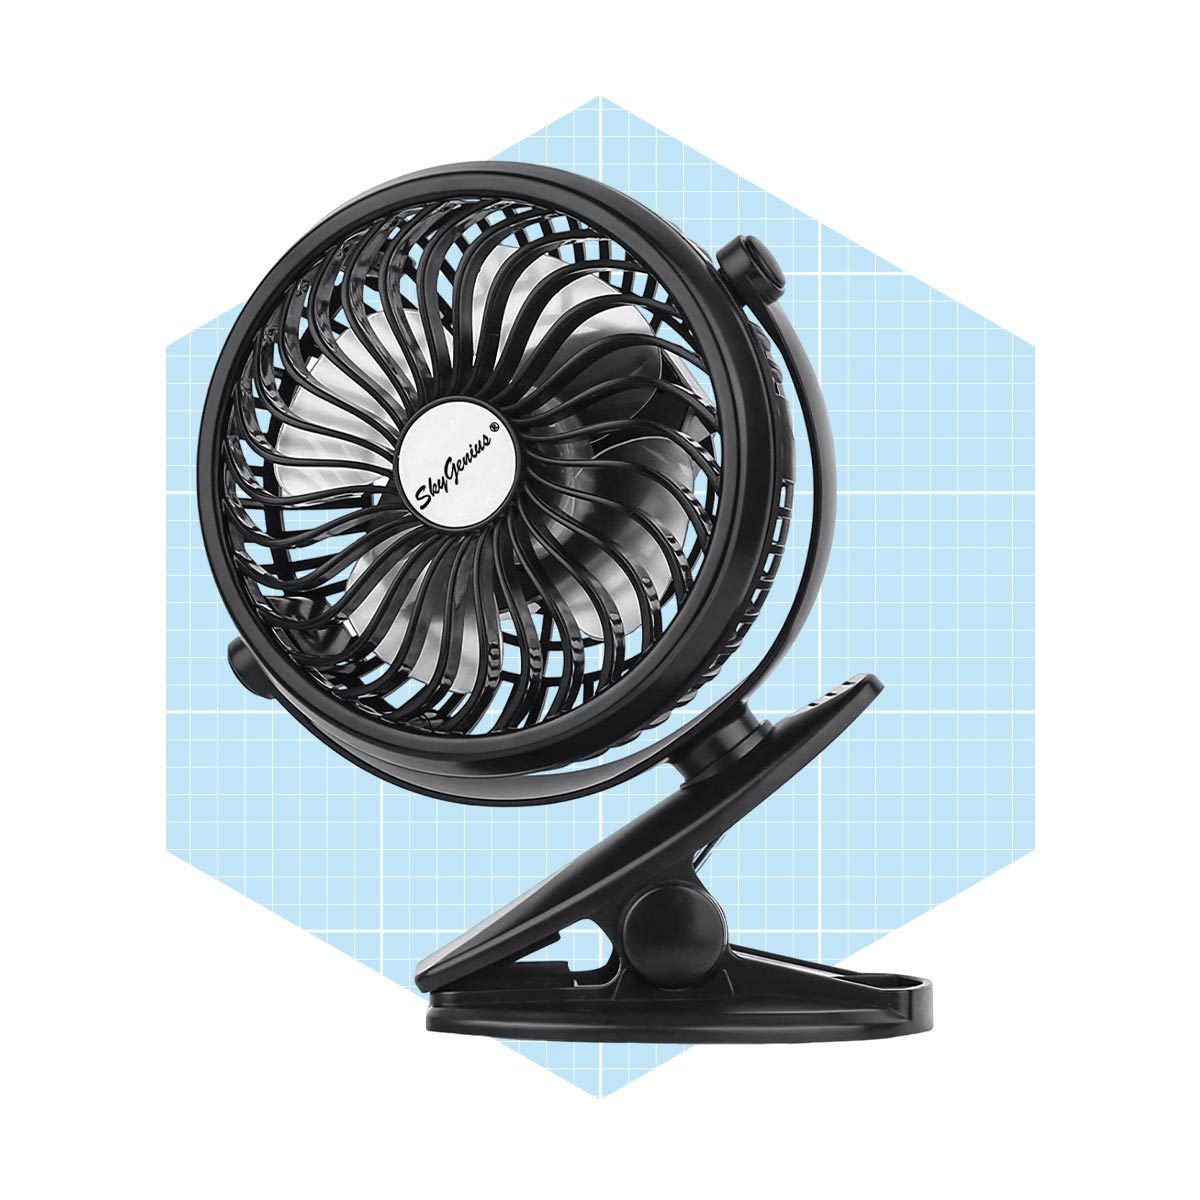 Skygenius Clip On Mini Desk Fan